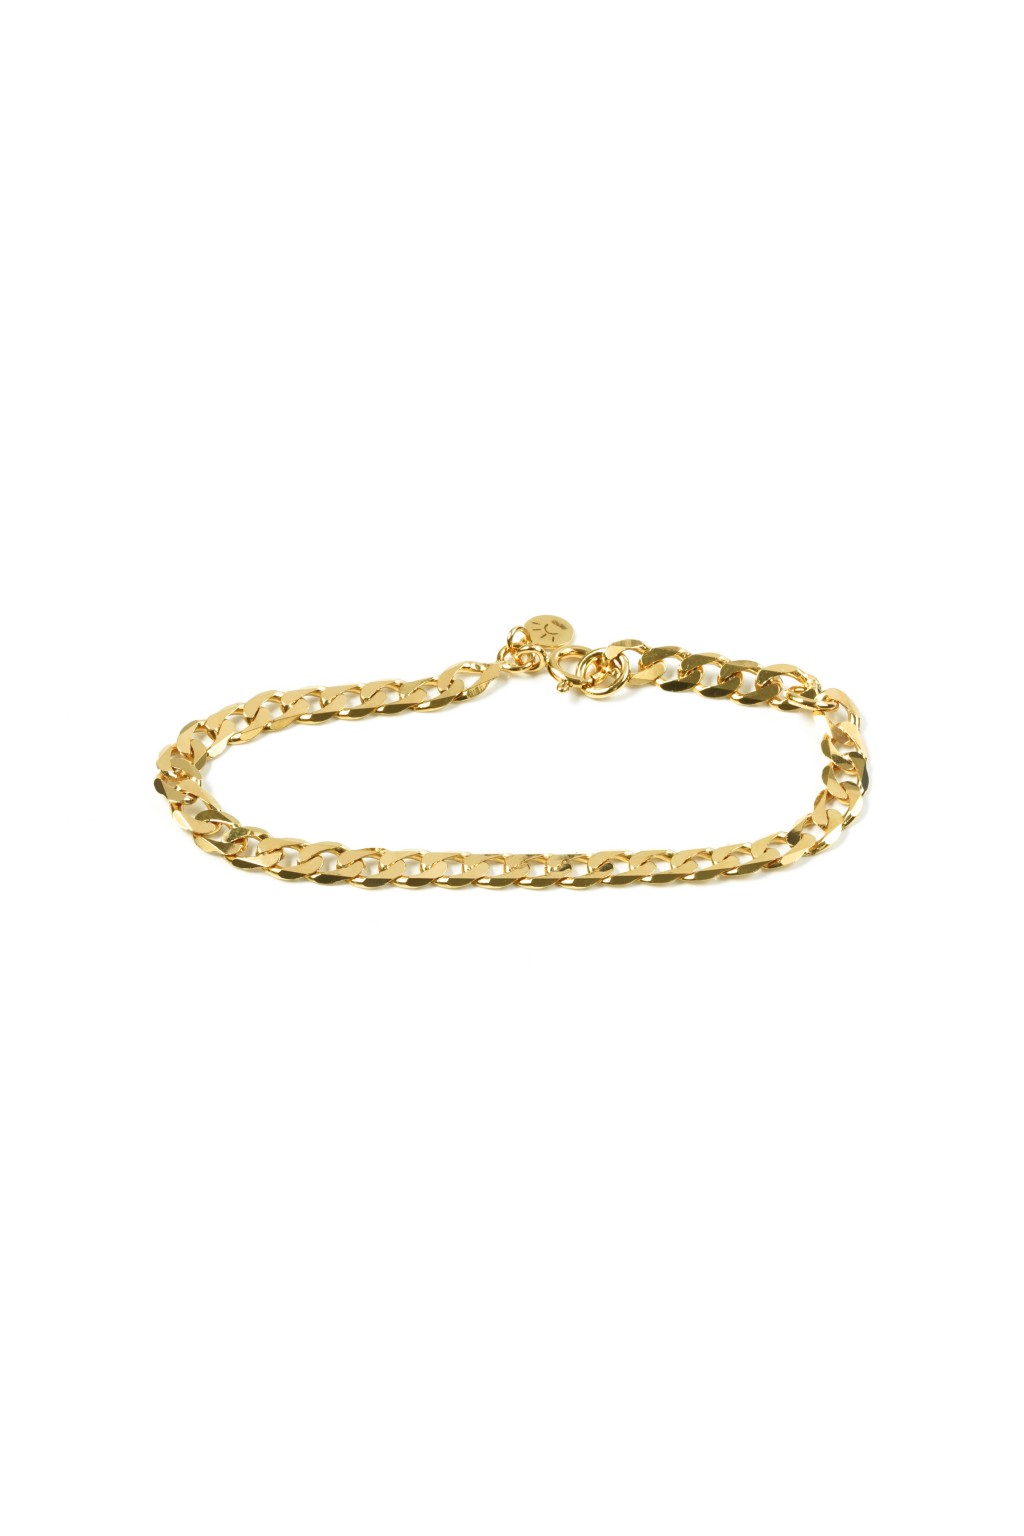 bracelet doré avec maille épaisse en argent plaqué or 24k